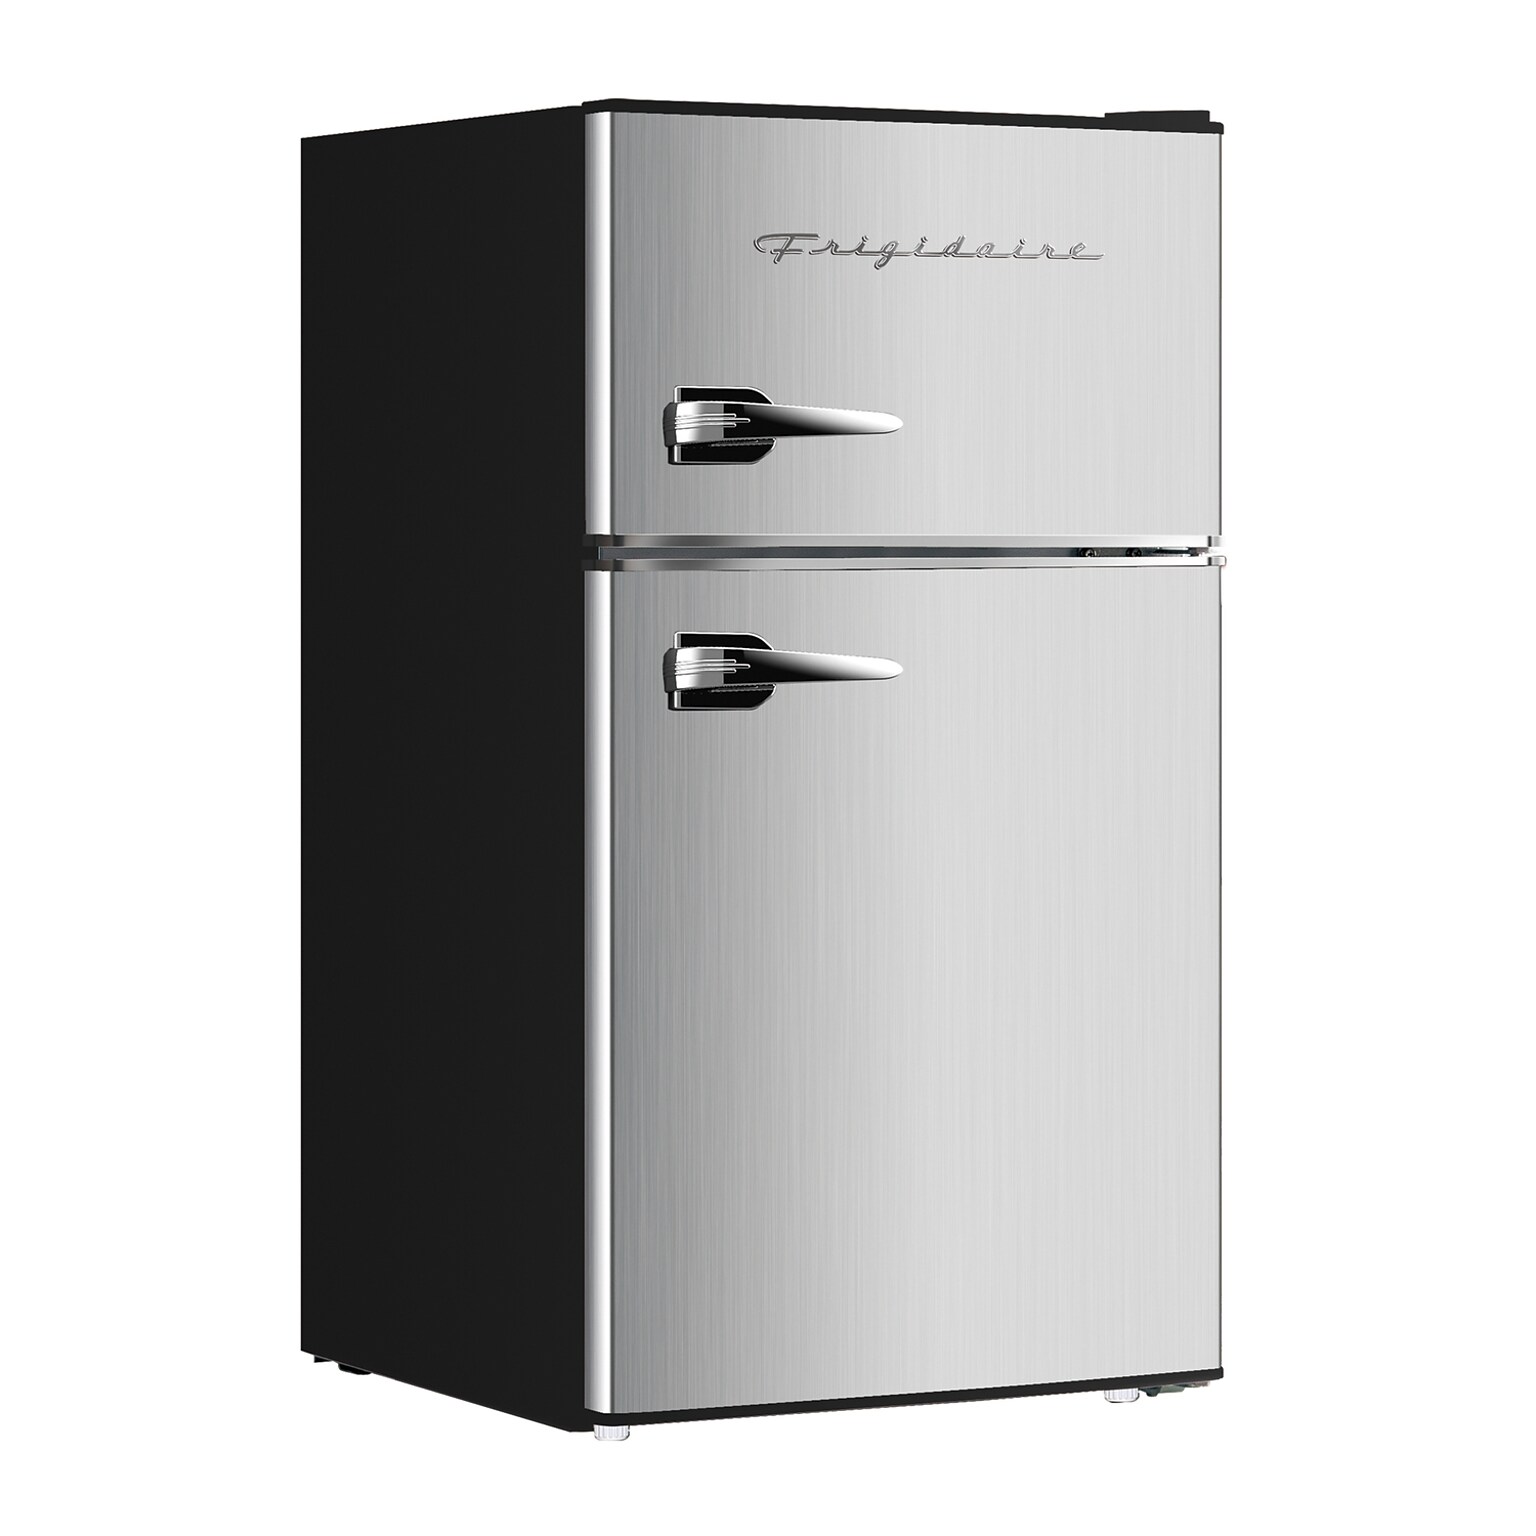 Frigidaire EFR391-B Retro 3.2-Cu. Ft. 2-Door Retro Compact Refrigerator with Freezer, Platinum Design with Chrome Trim